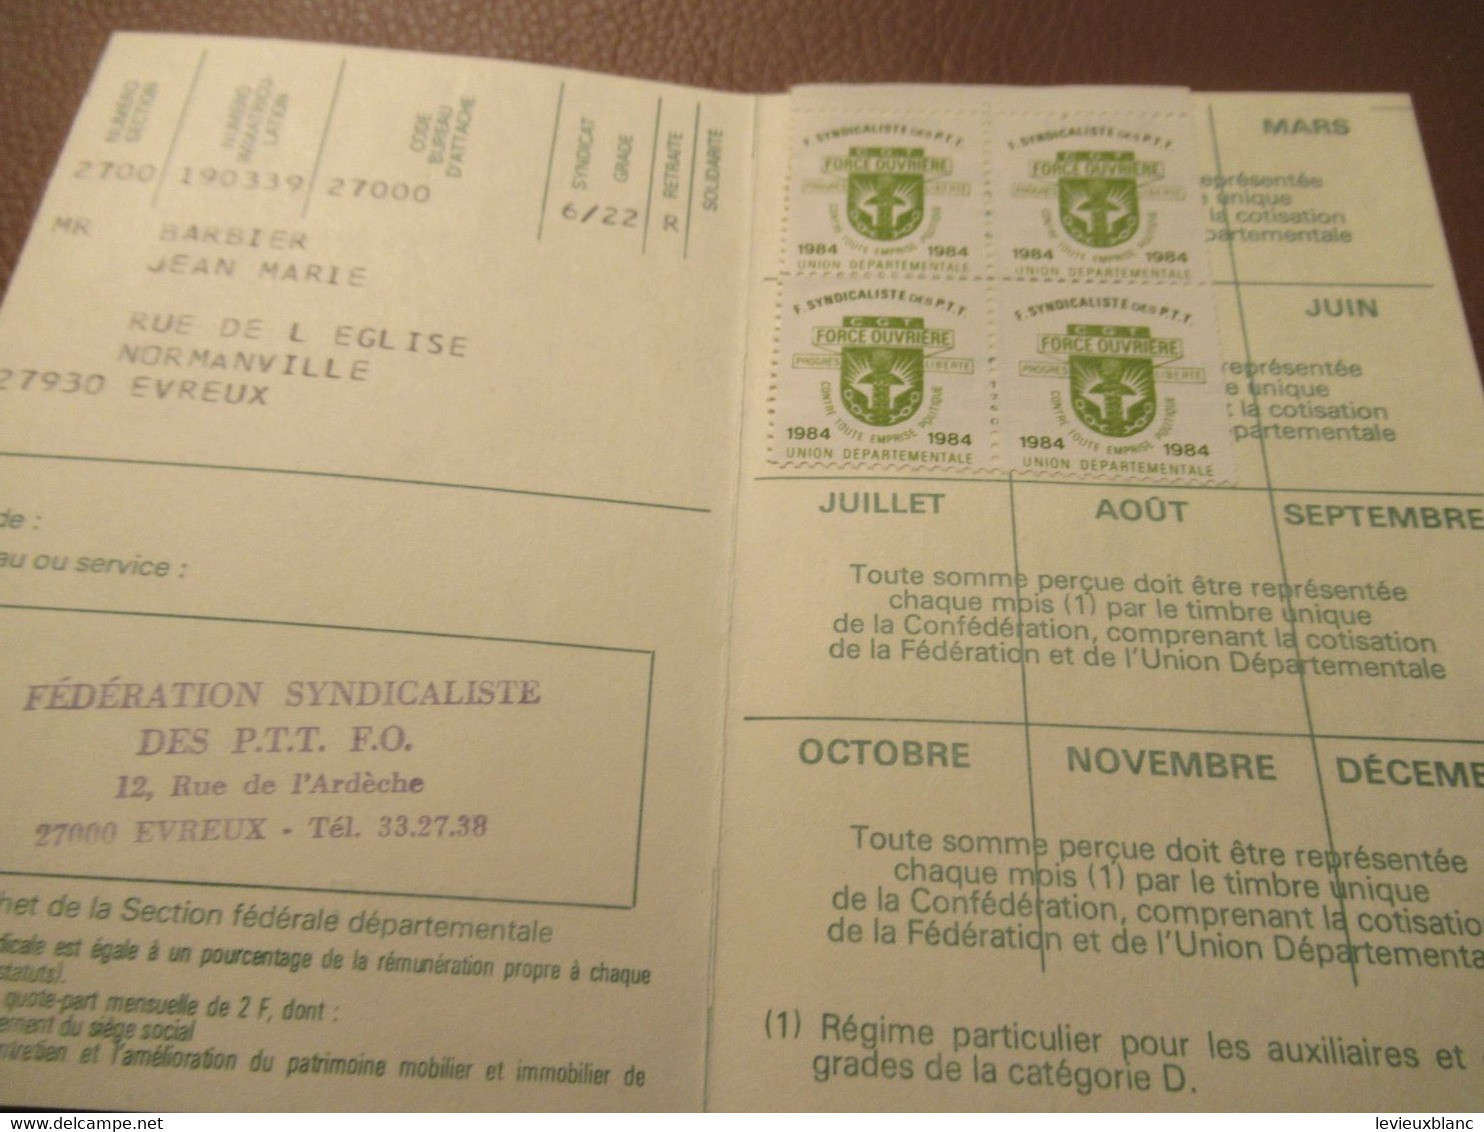 Carte Syndicale/F.O../ Carte Confédérale/Fédération Syndicaliste Des Travailleurs Des P.T.T./1984       AEC234 - Lidmaatschapskaarten